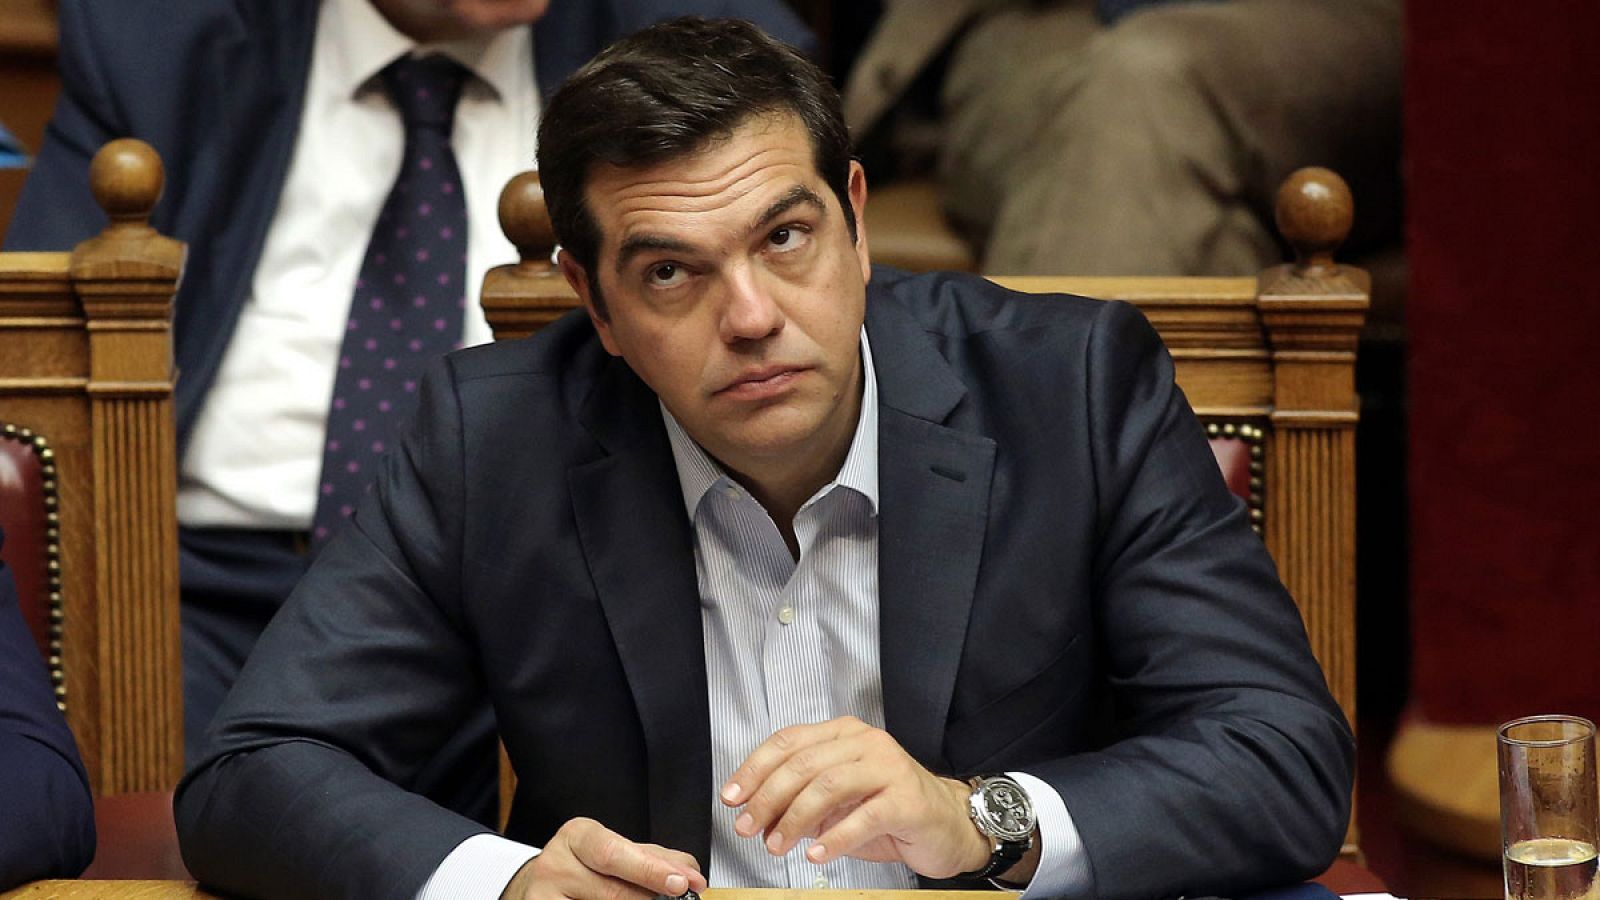 El primer ministro griego Alexis Tsipras el pasado 10 de octubre de 2016 durante un debate sobre corrupción durante una sesión del Parlamento en Atenas (Grecia).